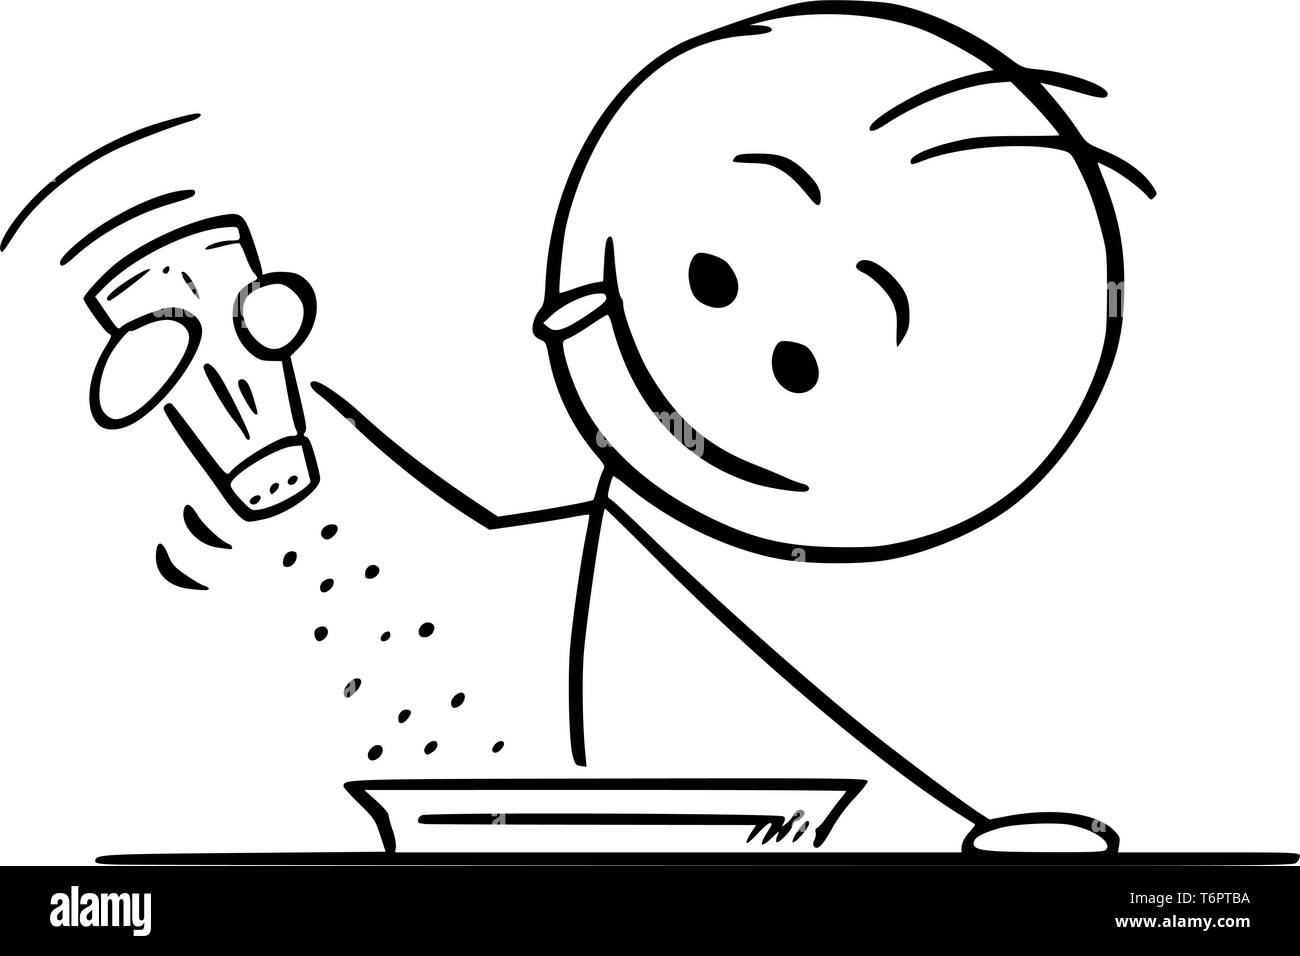 Cartoon stick figure dessin illustration conceptuelle de l'heureux homme affamé holding salière et utiliser le poivre, sel ou d'épices sur la nourriture ou de la soupe. Illustration de Vecteur